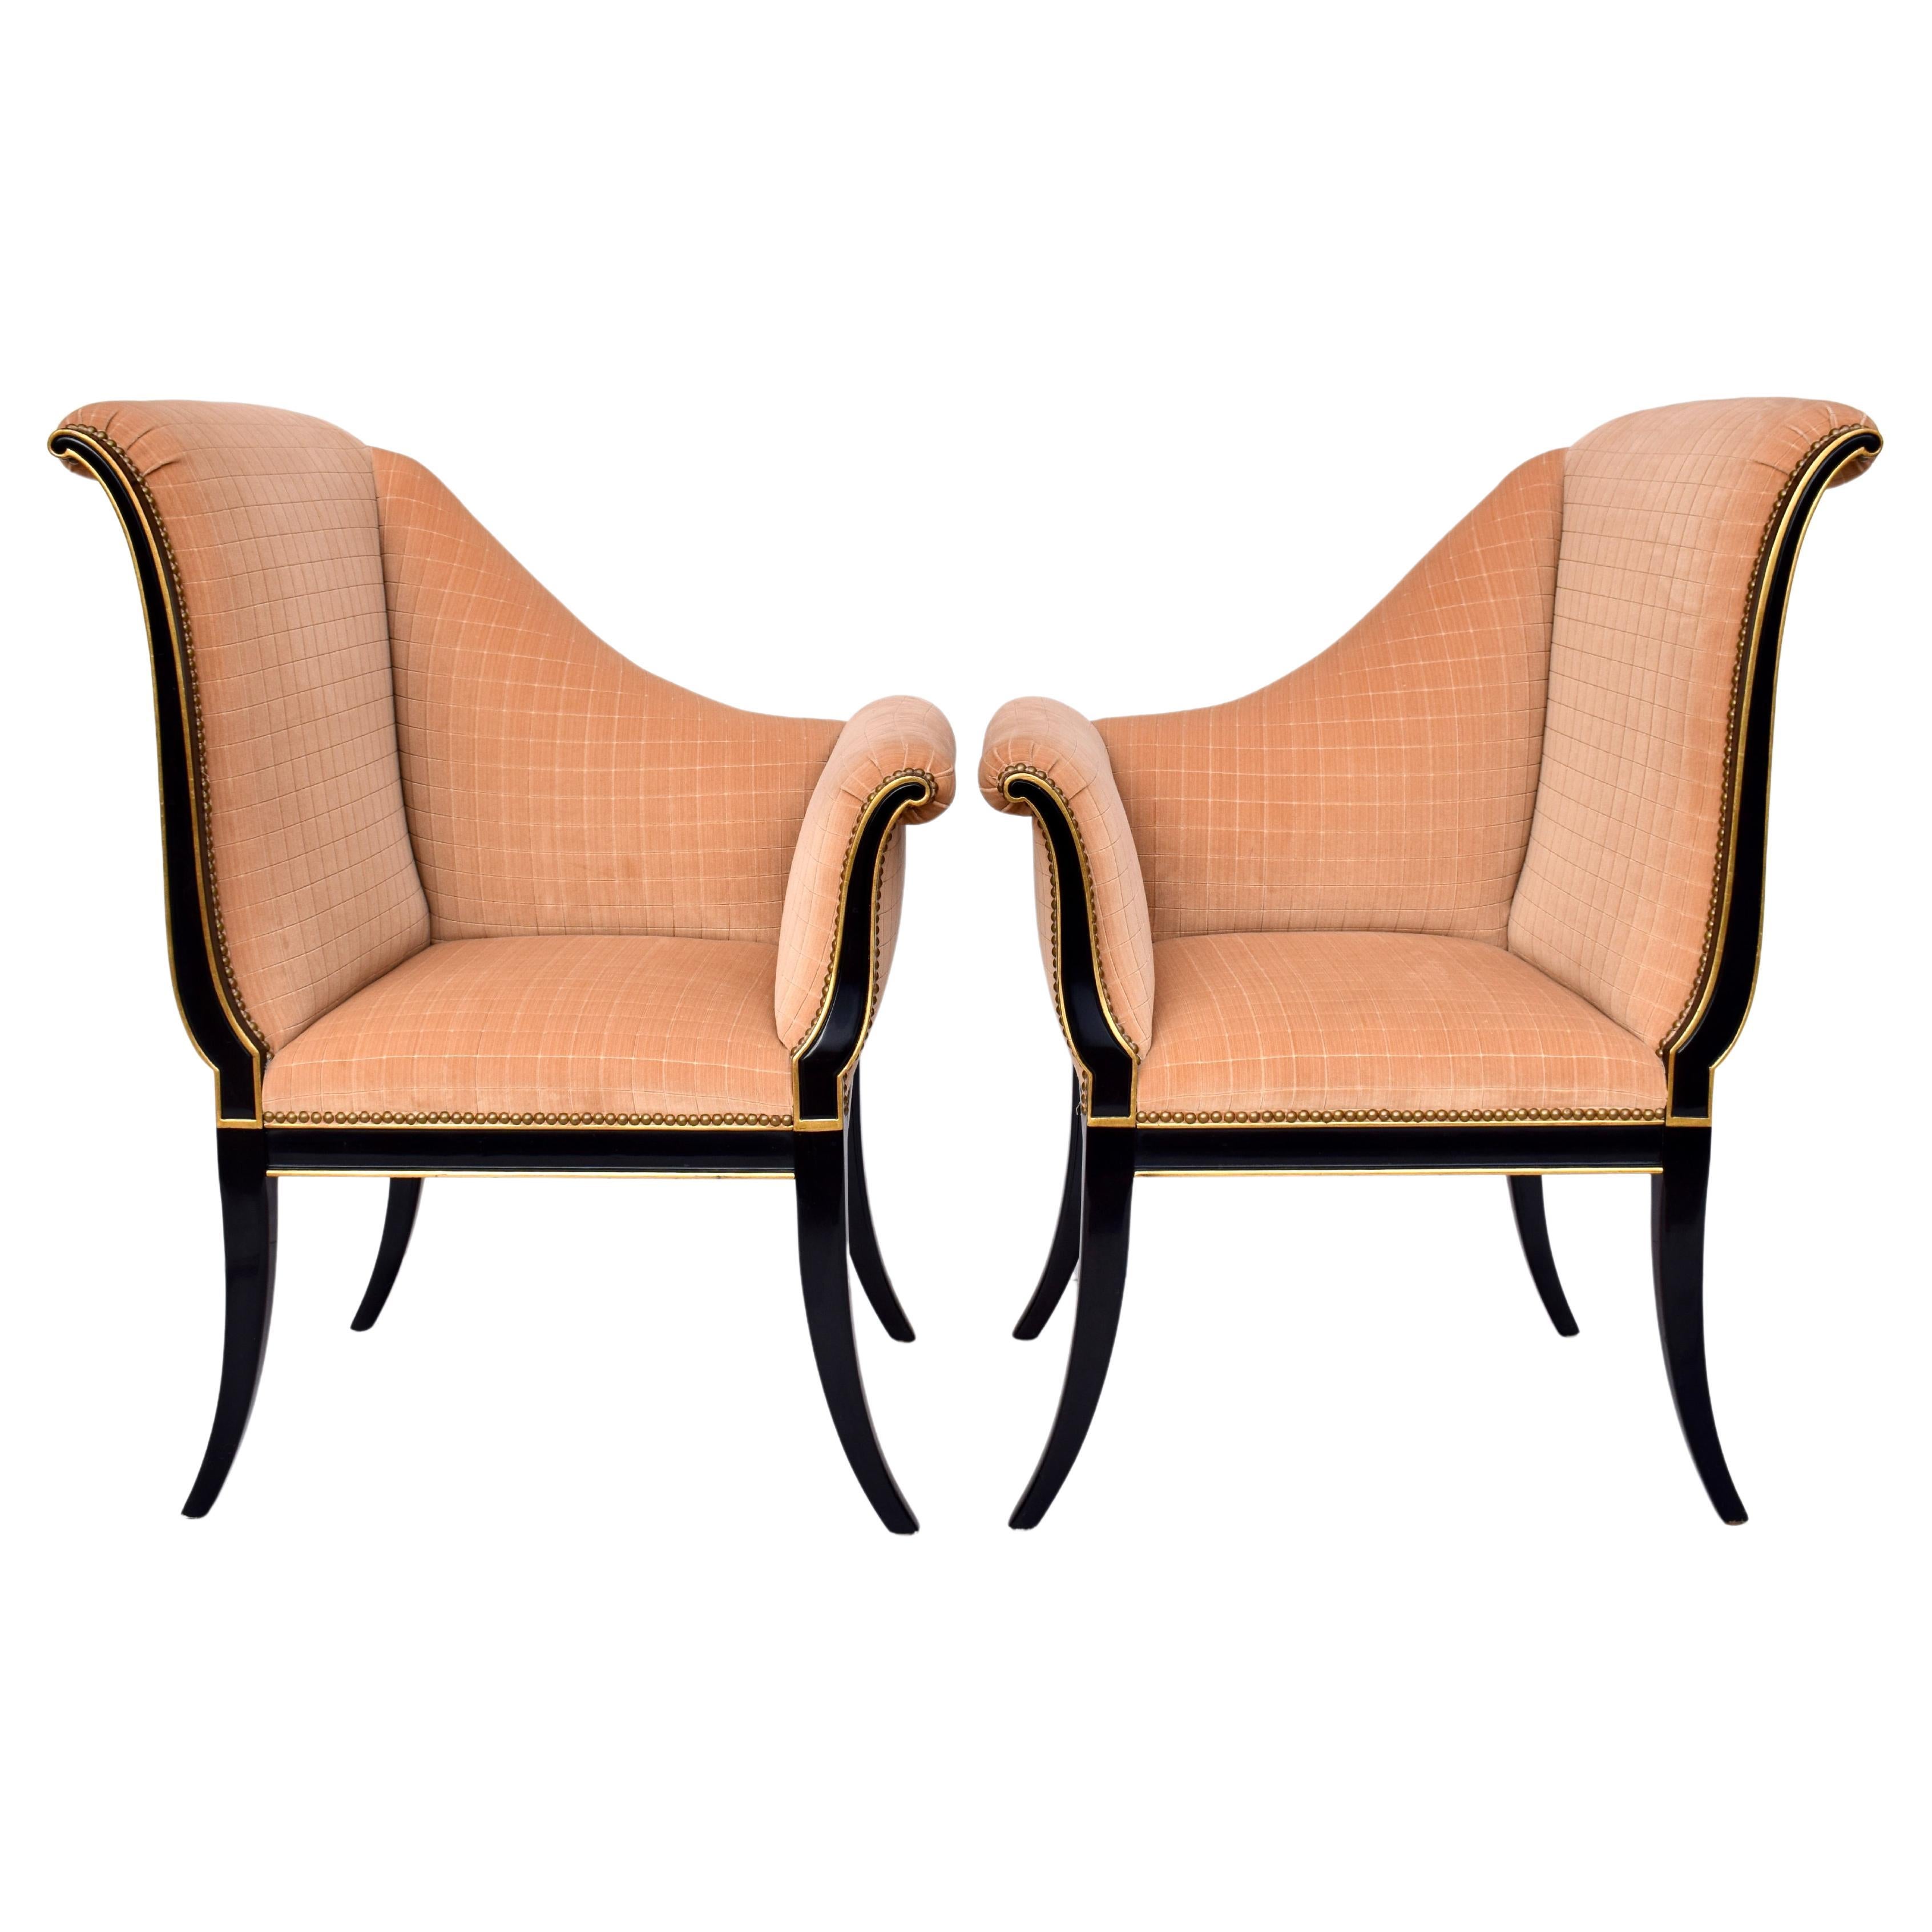 Karges Furniture Parler Deux Right & Left Regency Chairs For Sale